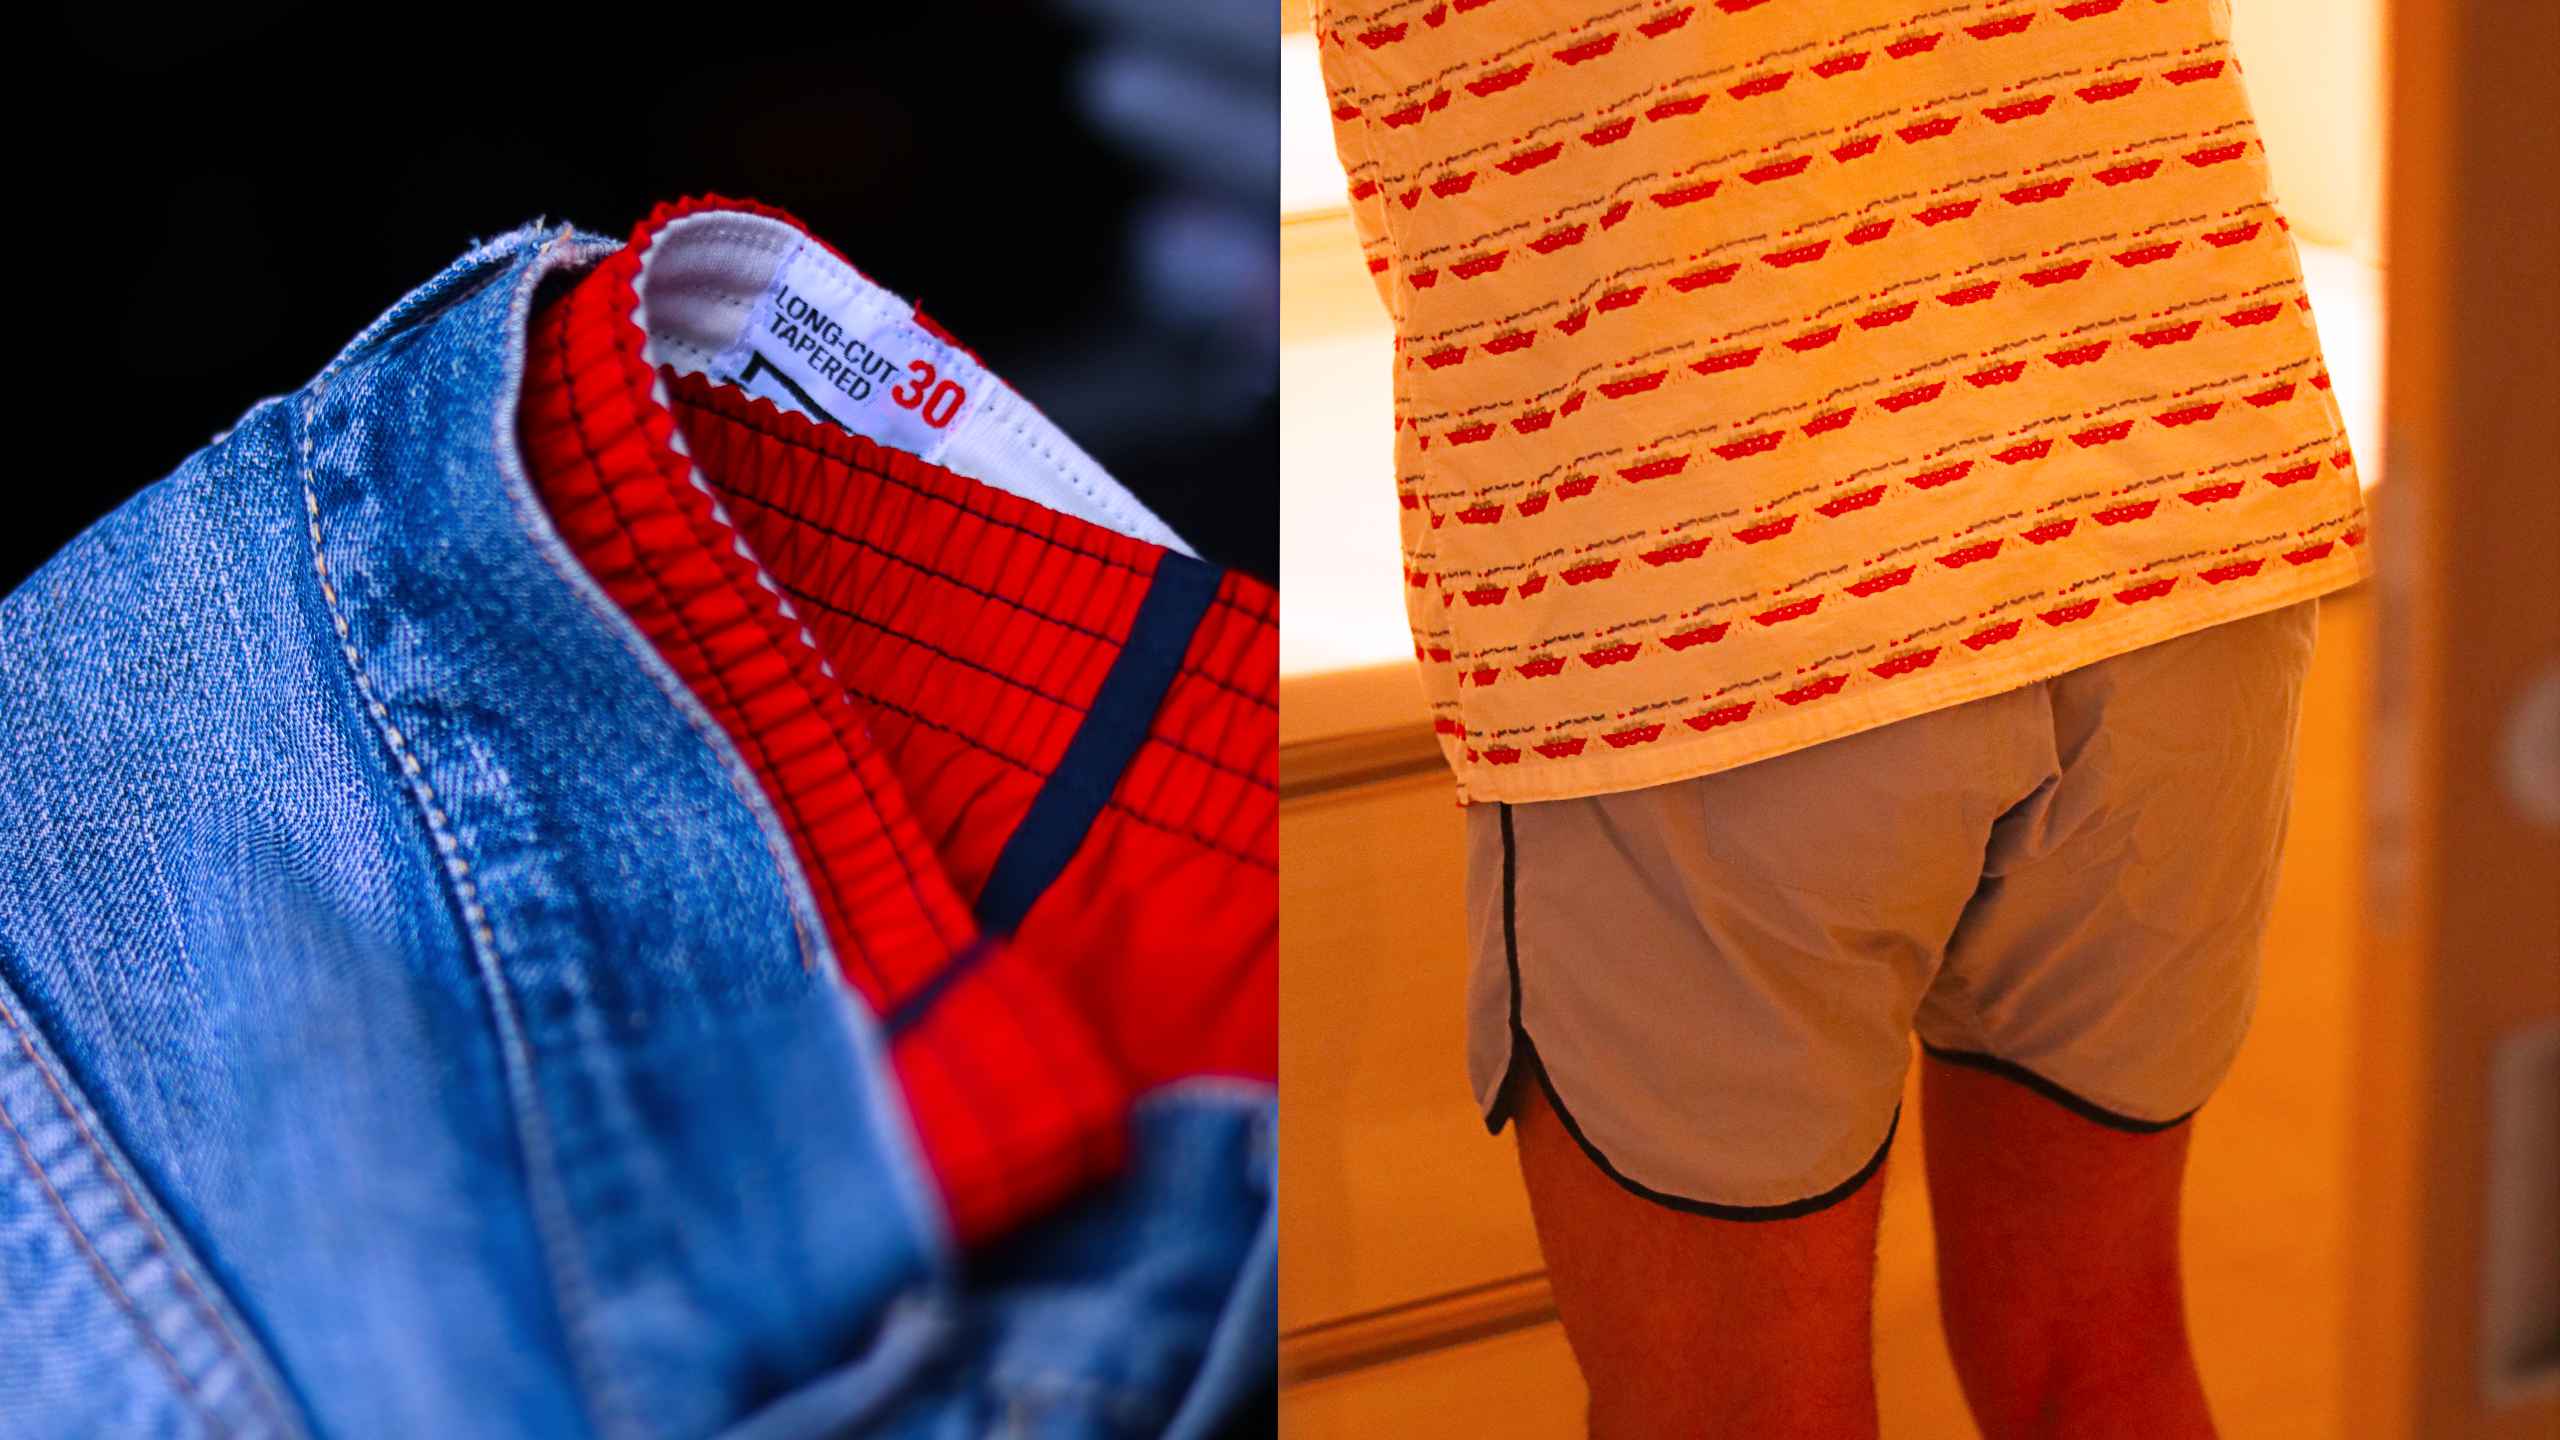 Vixen Men's New Year's Eve Slip (red)-men's Underwear - Boxers